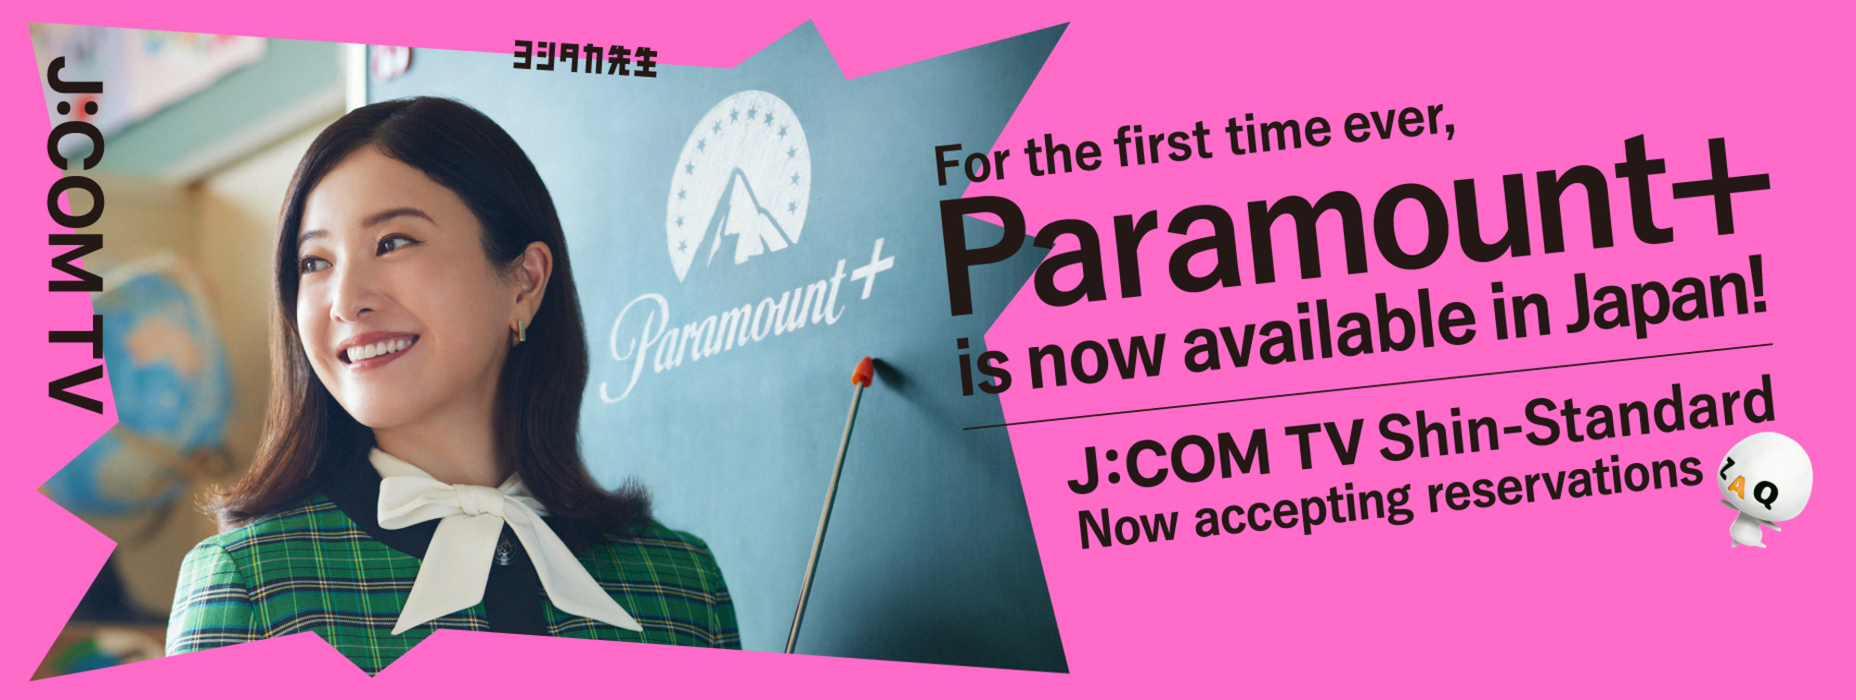 J:COM × Paramount＋J:COM TV Shin Standard xuất hiện! Gặp gỡ những chương trình bất ngờ và gặp gỡ những chương trình tôi muốn xem